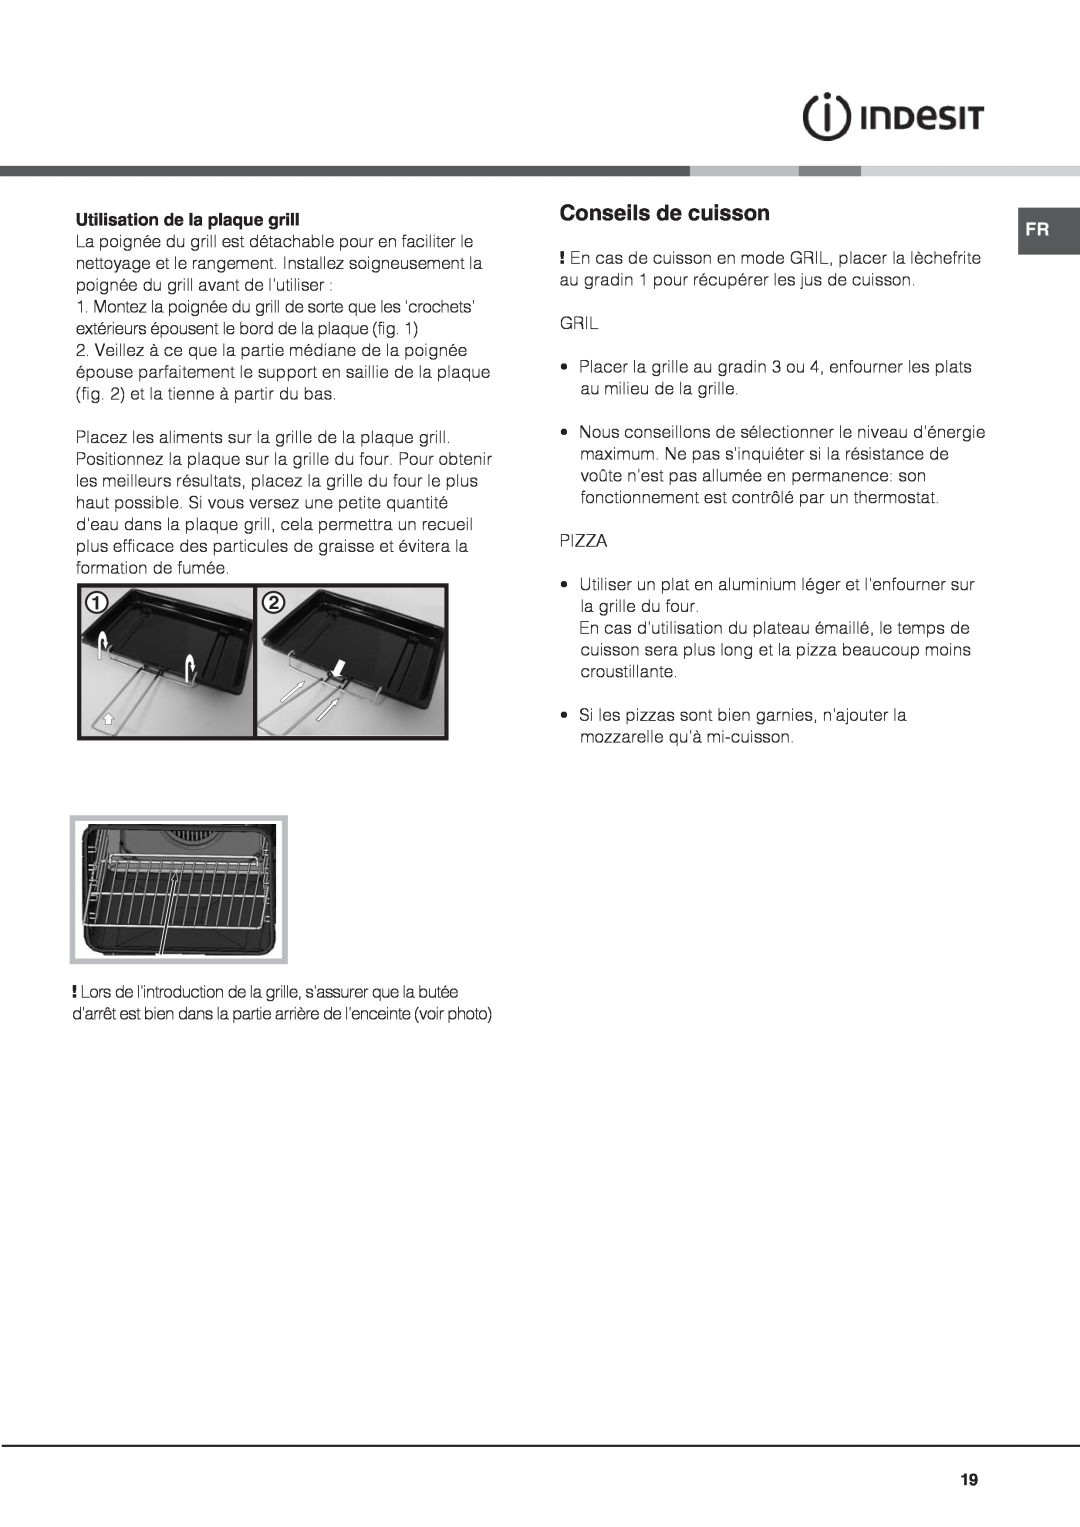 Indesit IS60C1 S manual Conseils de cuisson, Utilisation de la plaque grill 